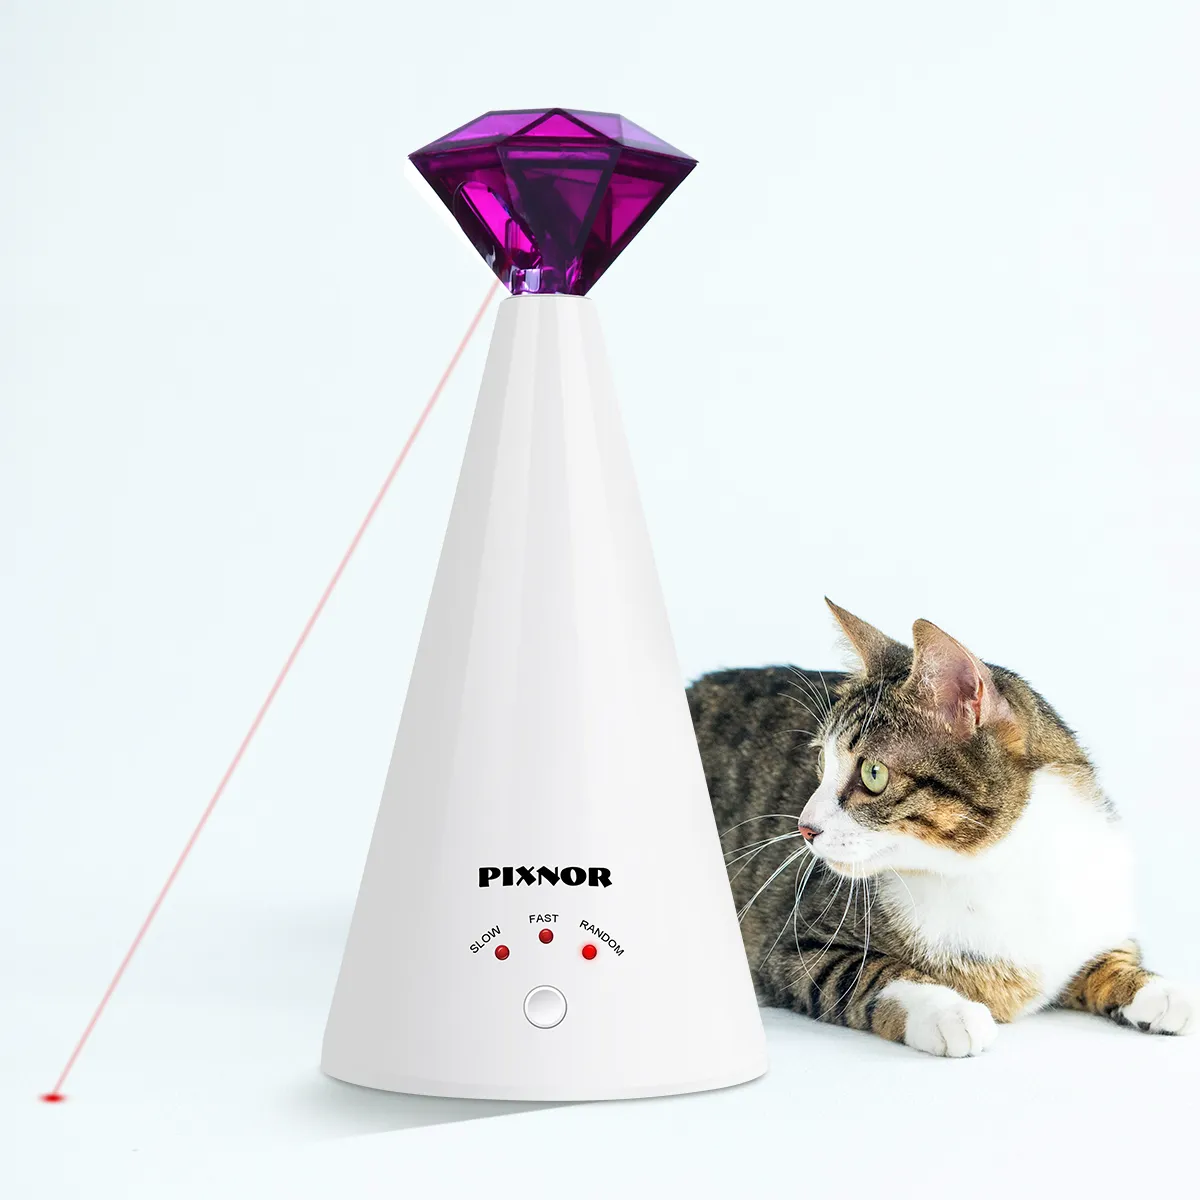 Pixnor Smart Laser Tafice Device Electric Toy Home Interactive Cat Réglable 3 VIXEURS PEAU POINTER PURPLE 2011122953717